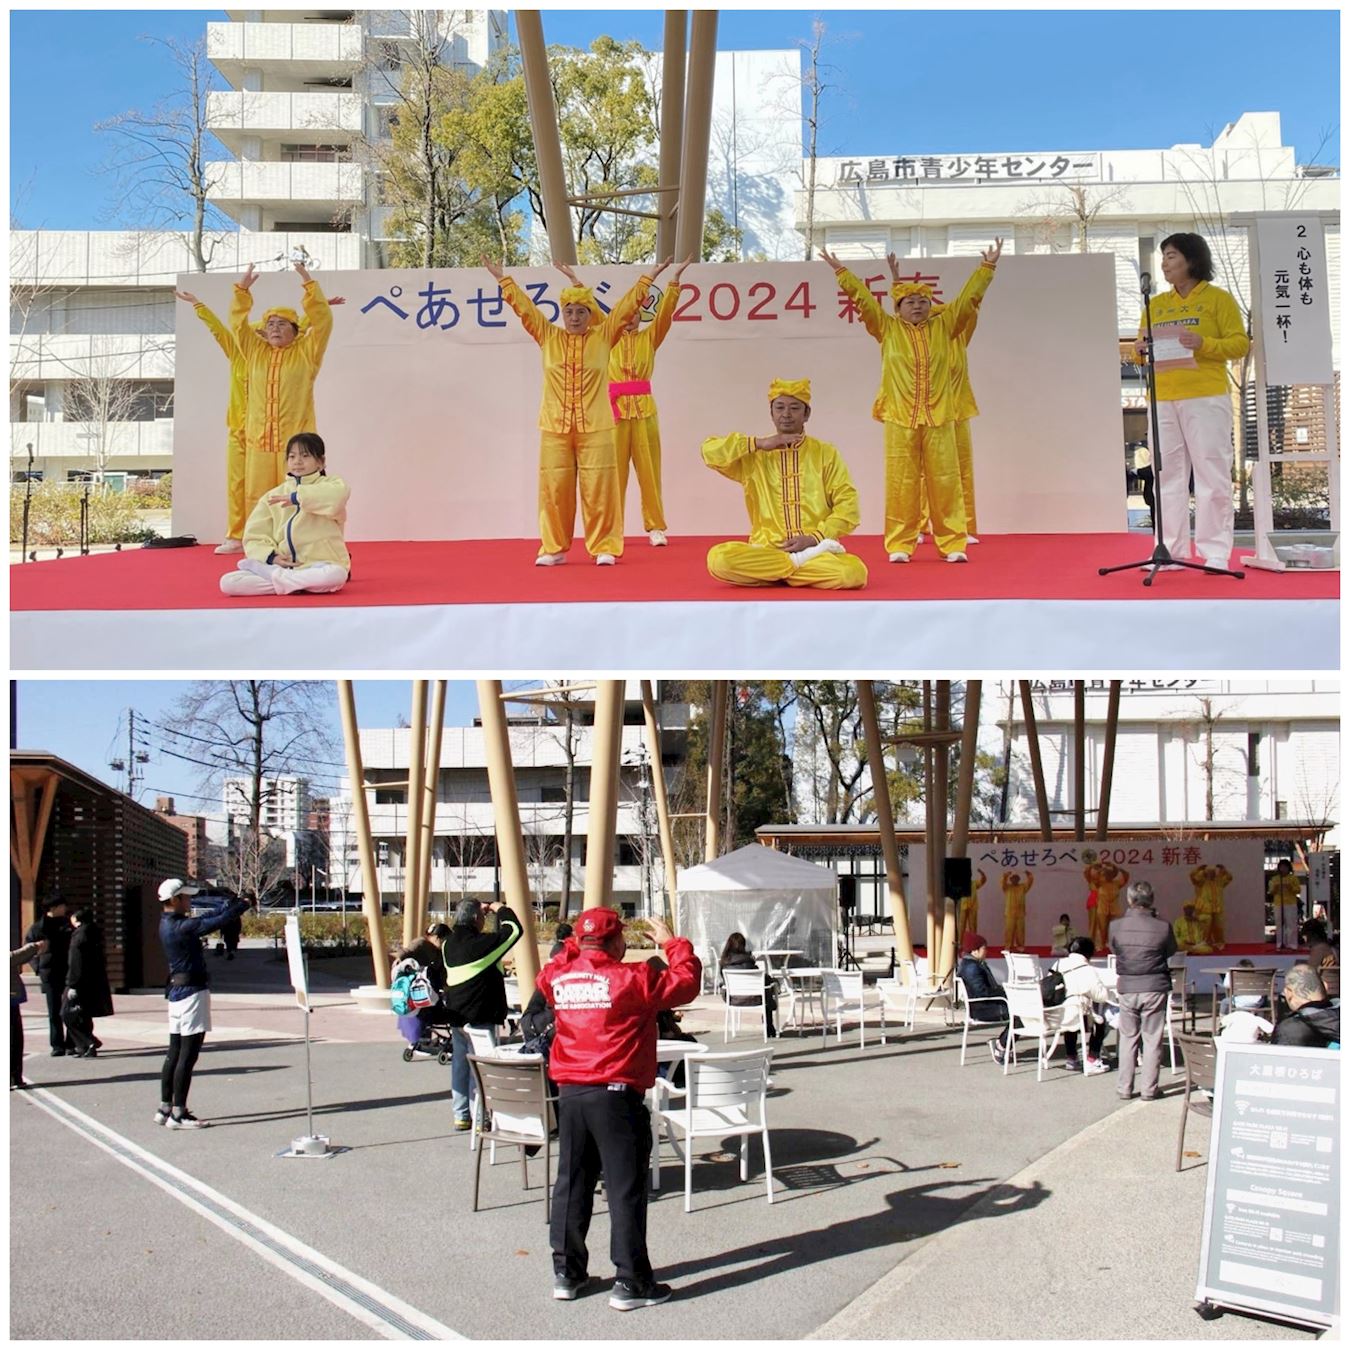 Image for article Японія: Фалунь Дафа вітають на святі «Мир і любов» у Хіросімі